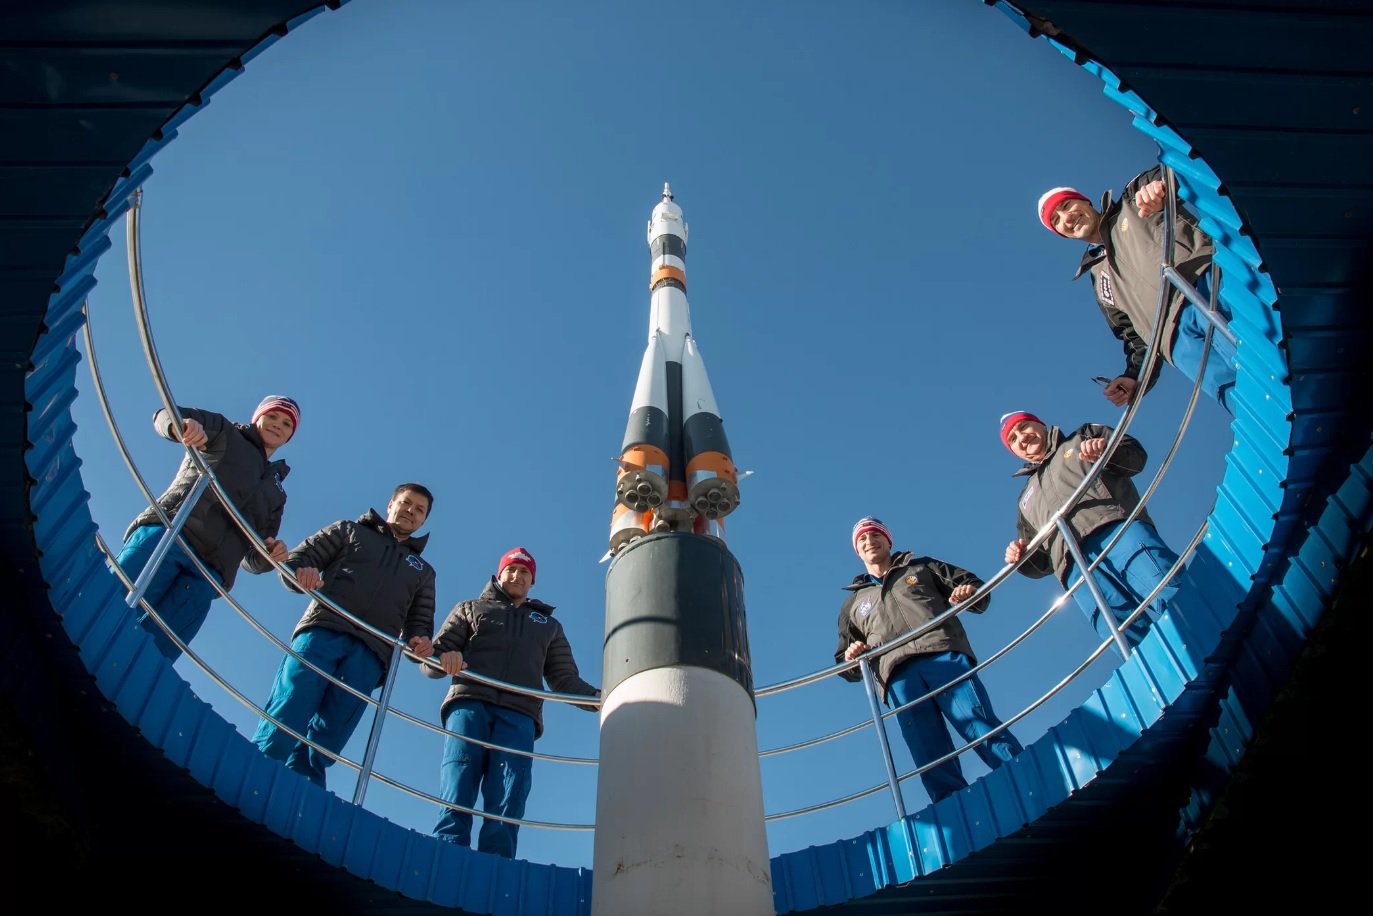 NASA chce kontynuować używać rosyjskie sojuzy po 2019 roku